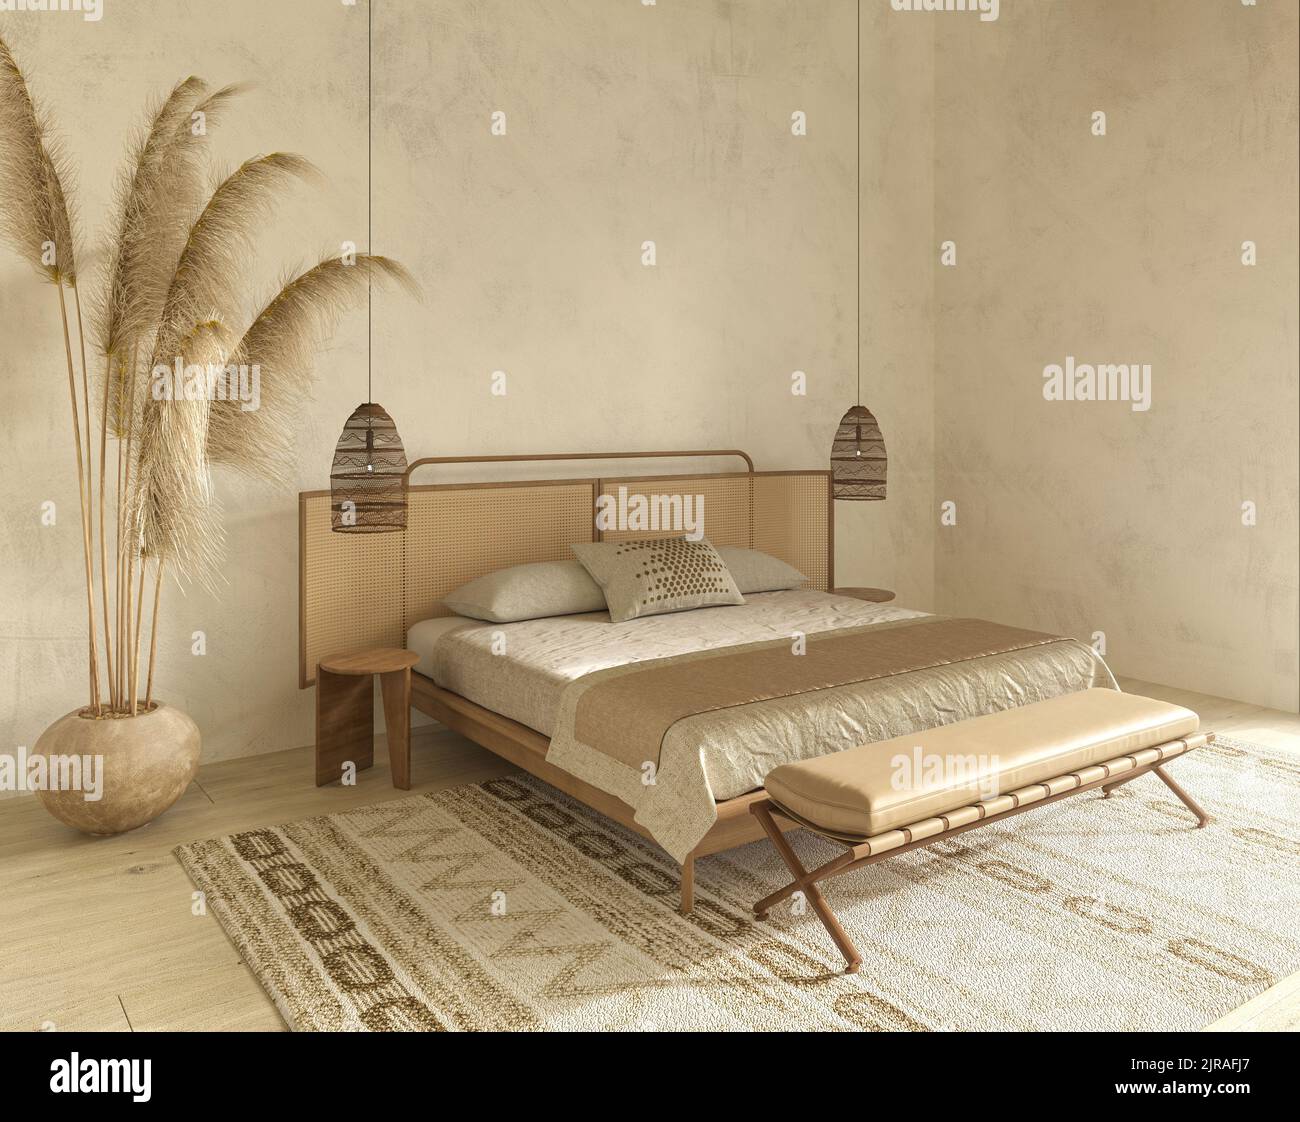 Mock up frame in bedroom interior design. Beige room with natural wooden furniture. Scandinavian style. 3d render illustration. Stock Photo